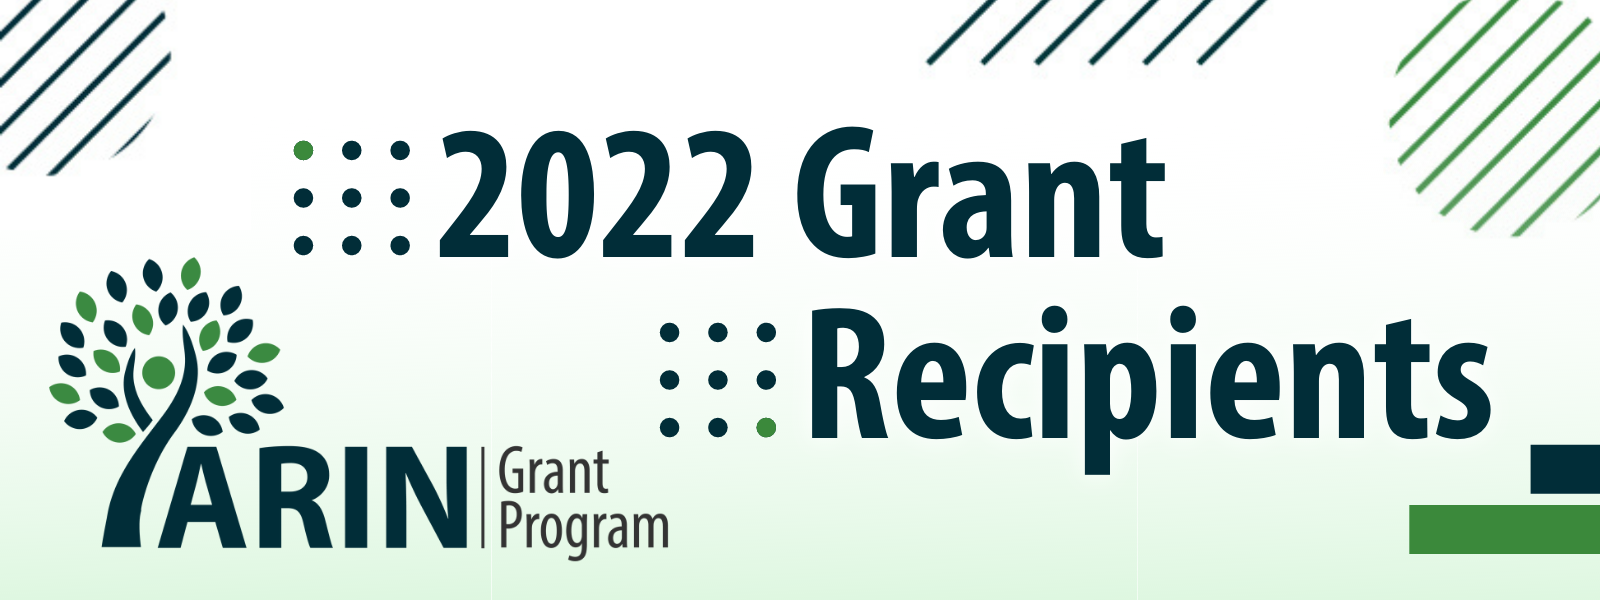 2022 Grant Recipients